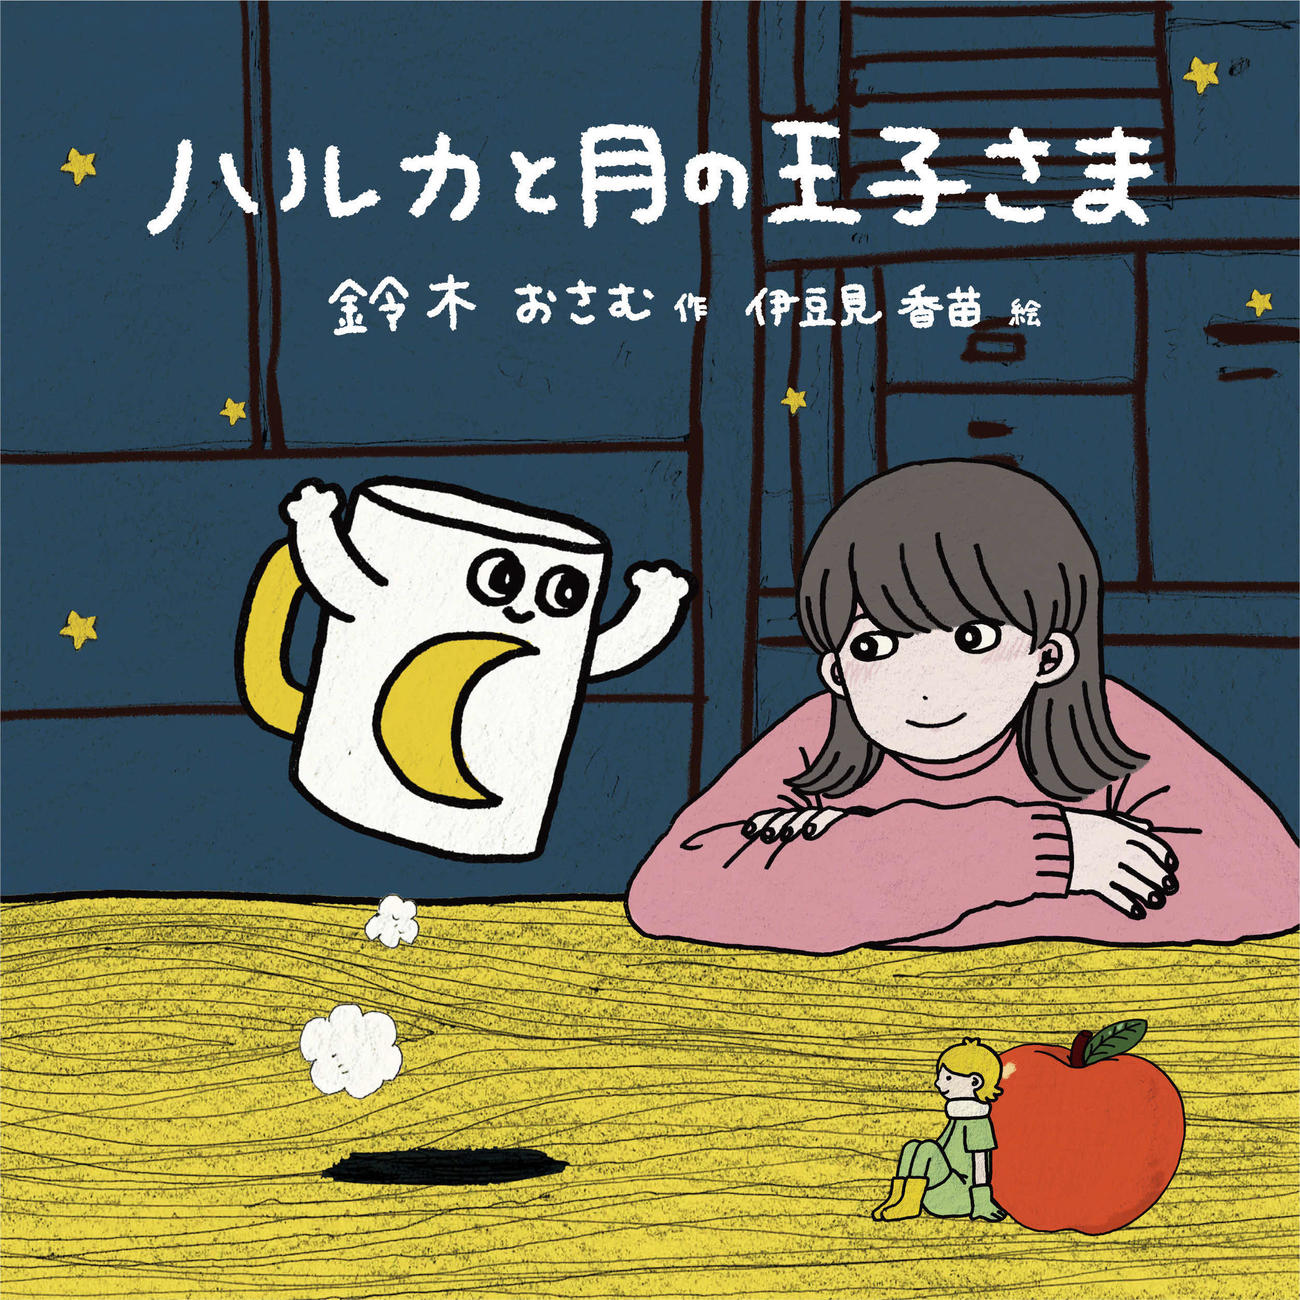 YOASOBIの最新曲「ハルカ」のイラスト小説「ハルカと月の王子さま」